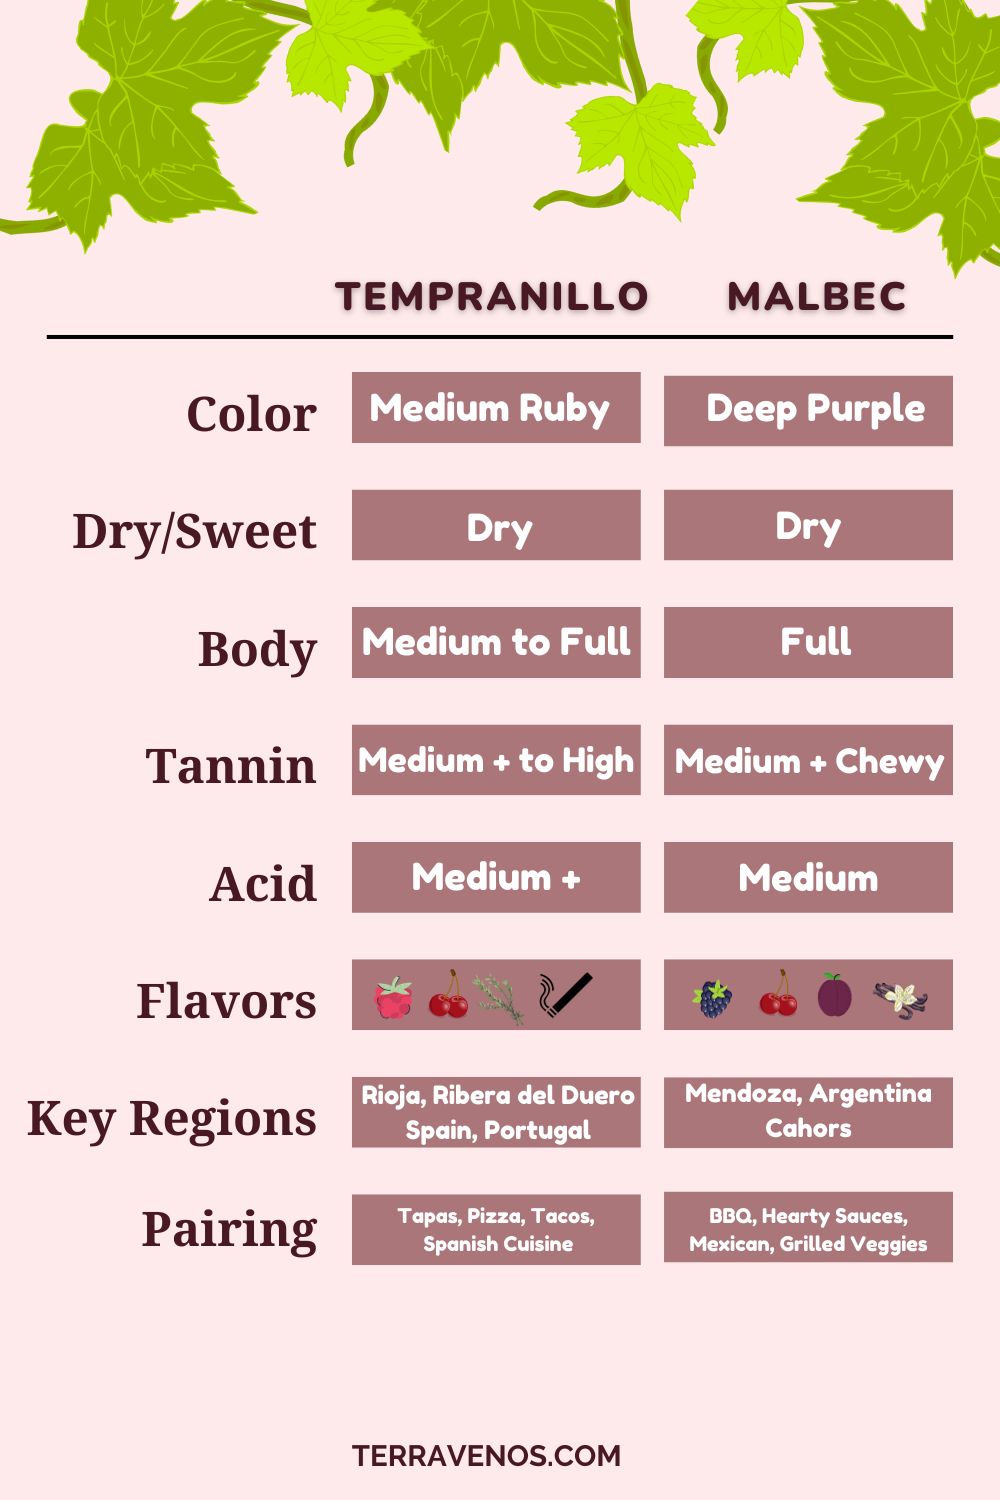 tempranillo-vs-malbec-infographic